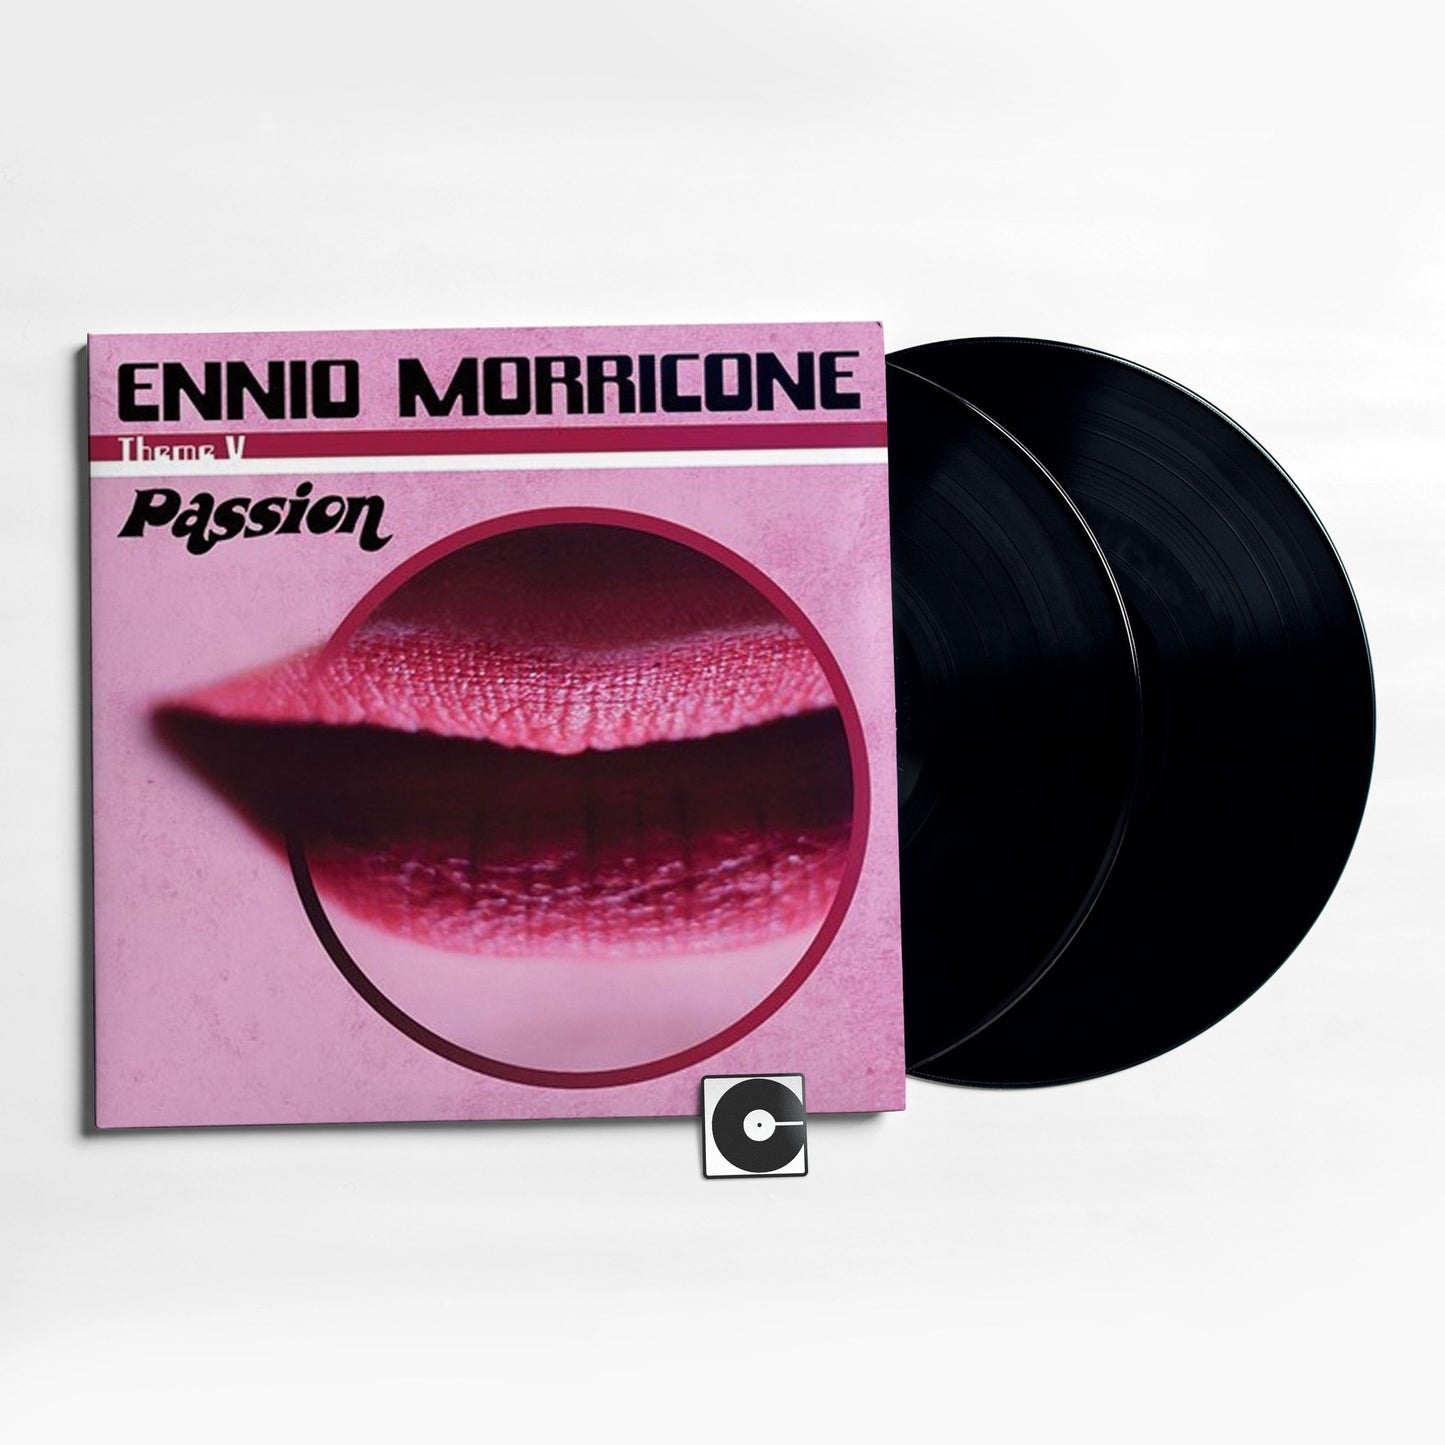 Ennio Morricone - "Themes: Passion"